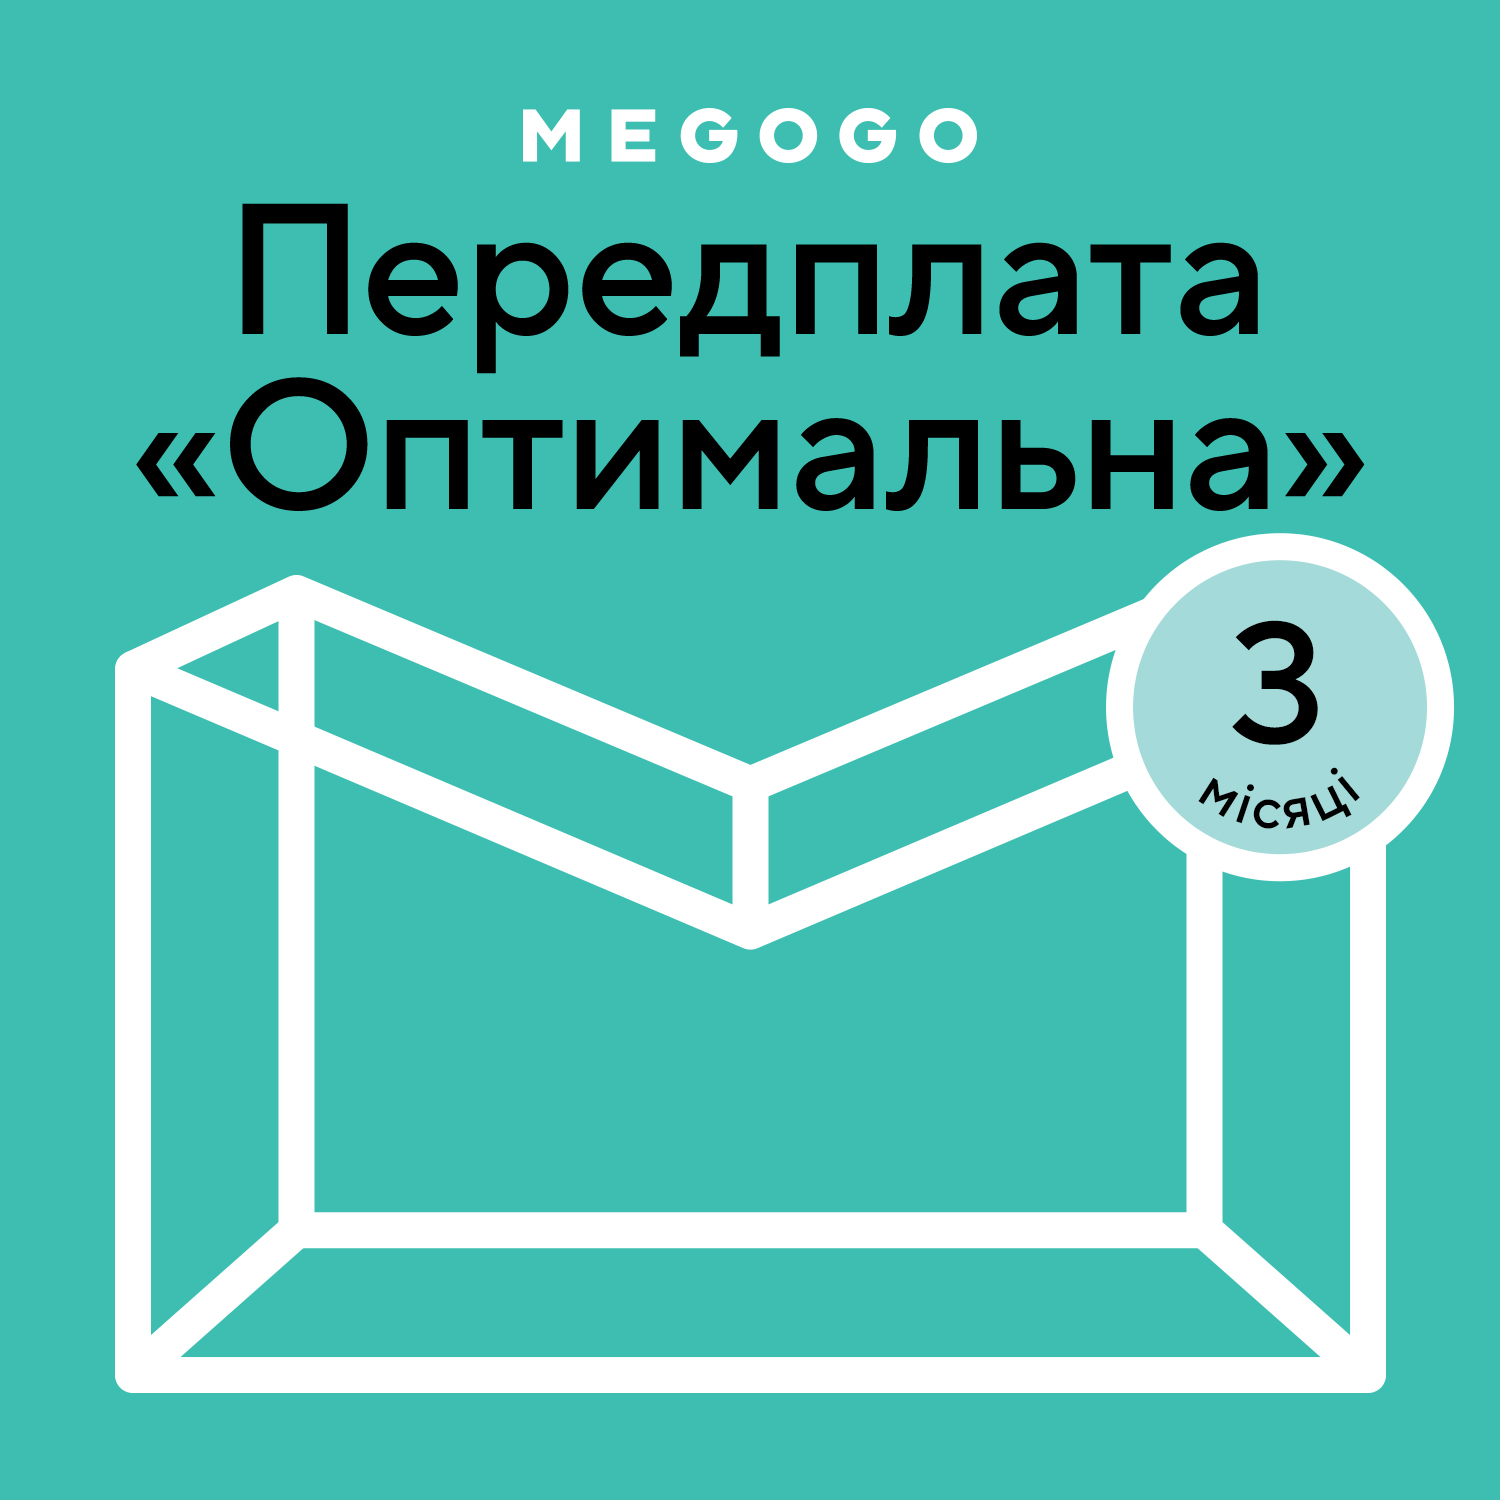 MEGOGO «Кино и ТВ: Оптимальная» 3 мес в Киеве